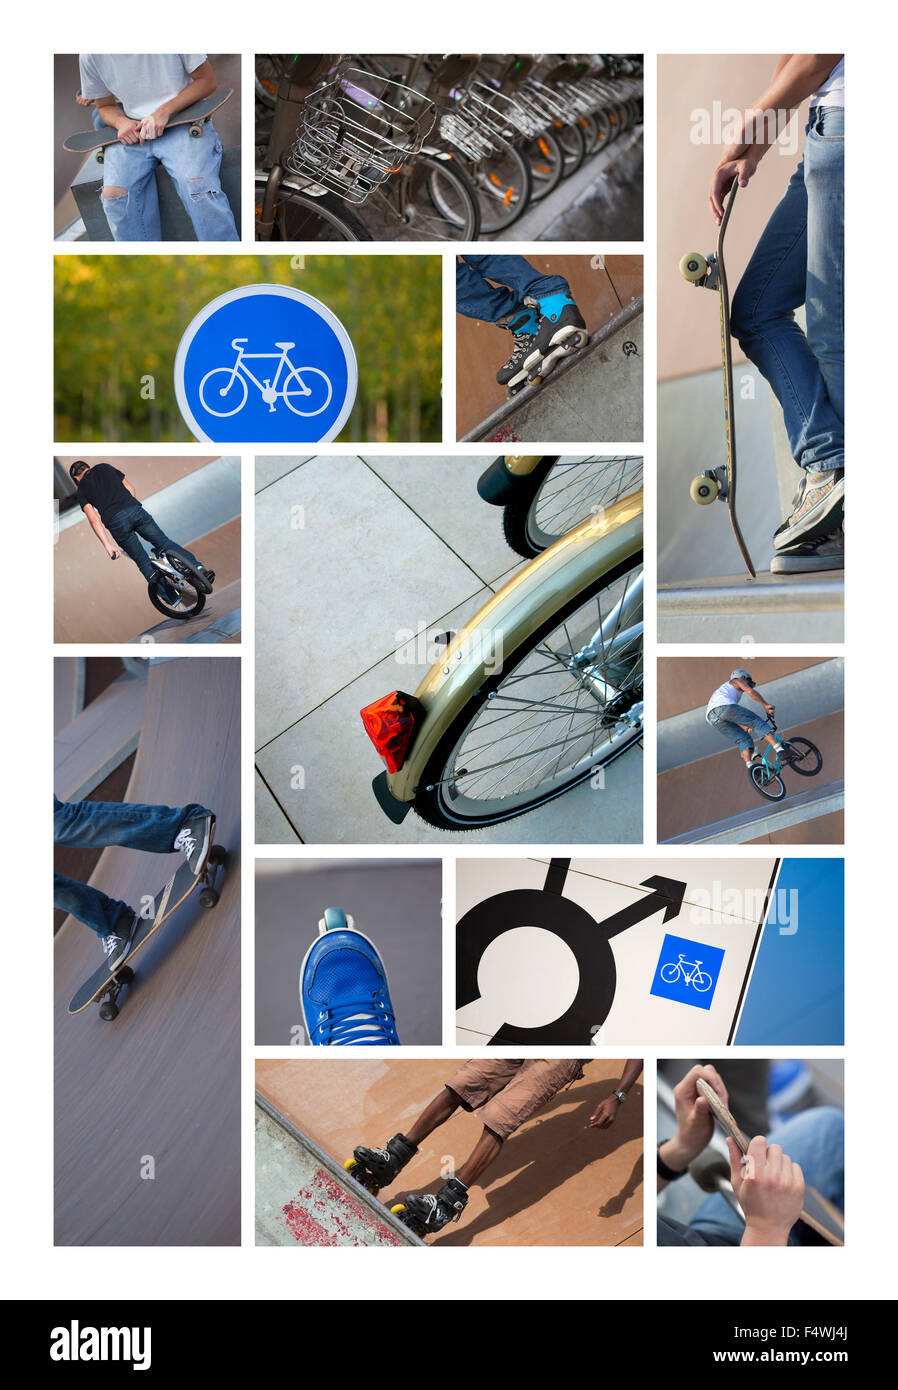 Les rouleaux, de vélos et de la signalisation routière sur un collage Banque D'Images